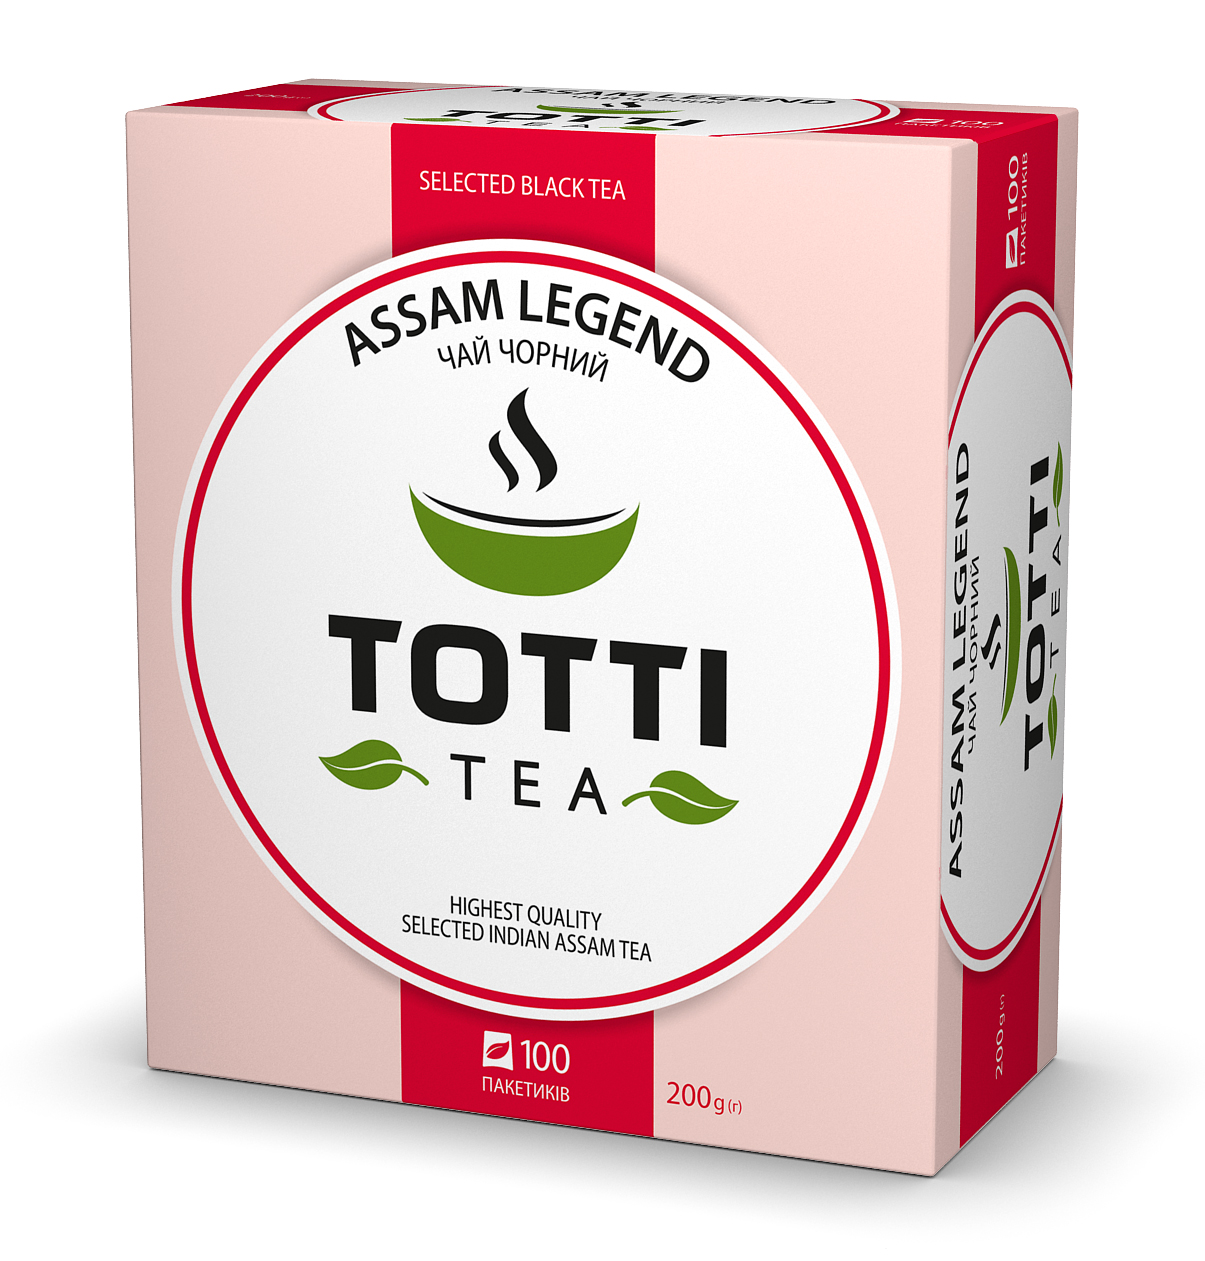 TEA TOTTI TEA Assam Legend